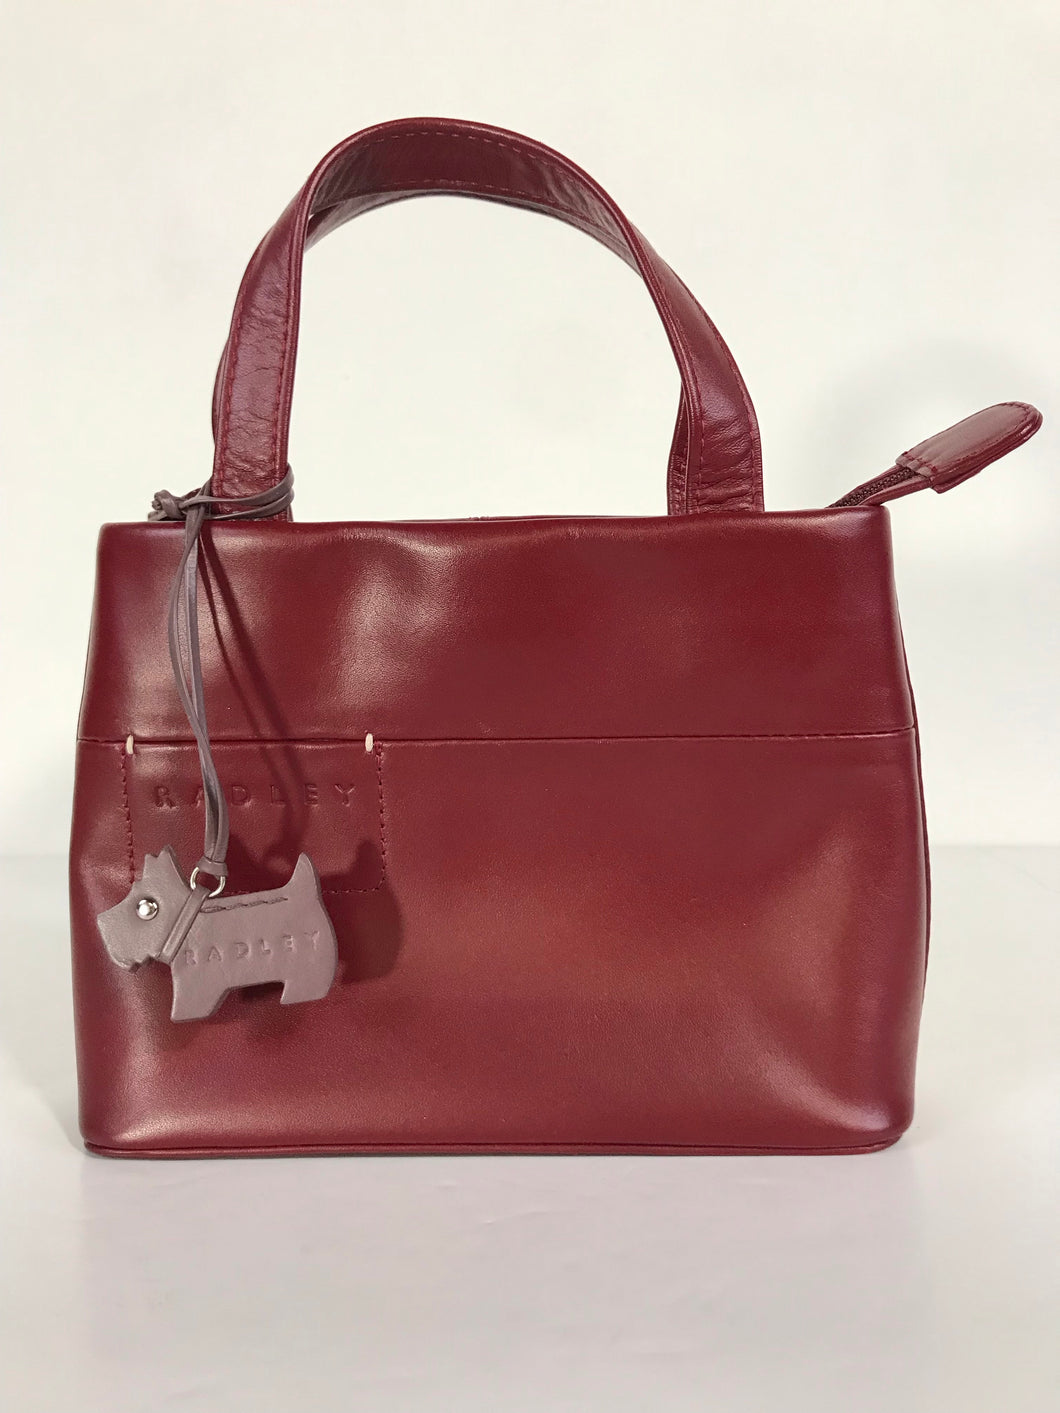 Radley Women's Clutch Bag | S UK8 | Red